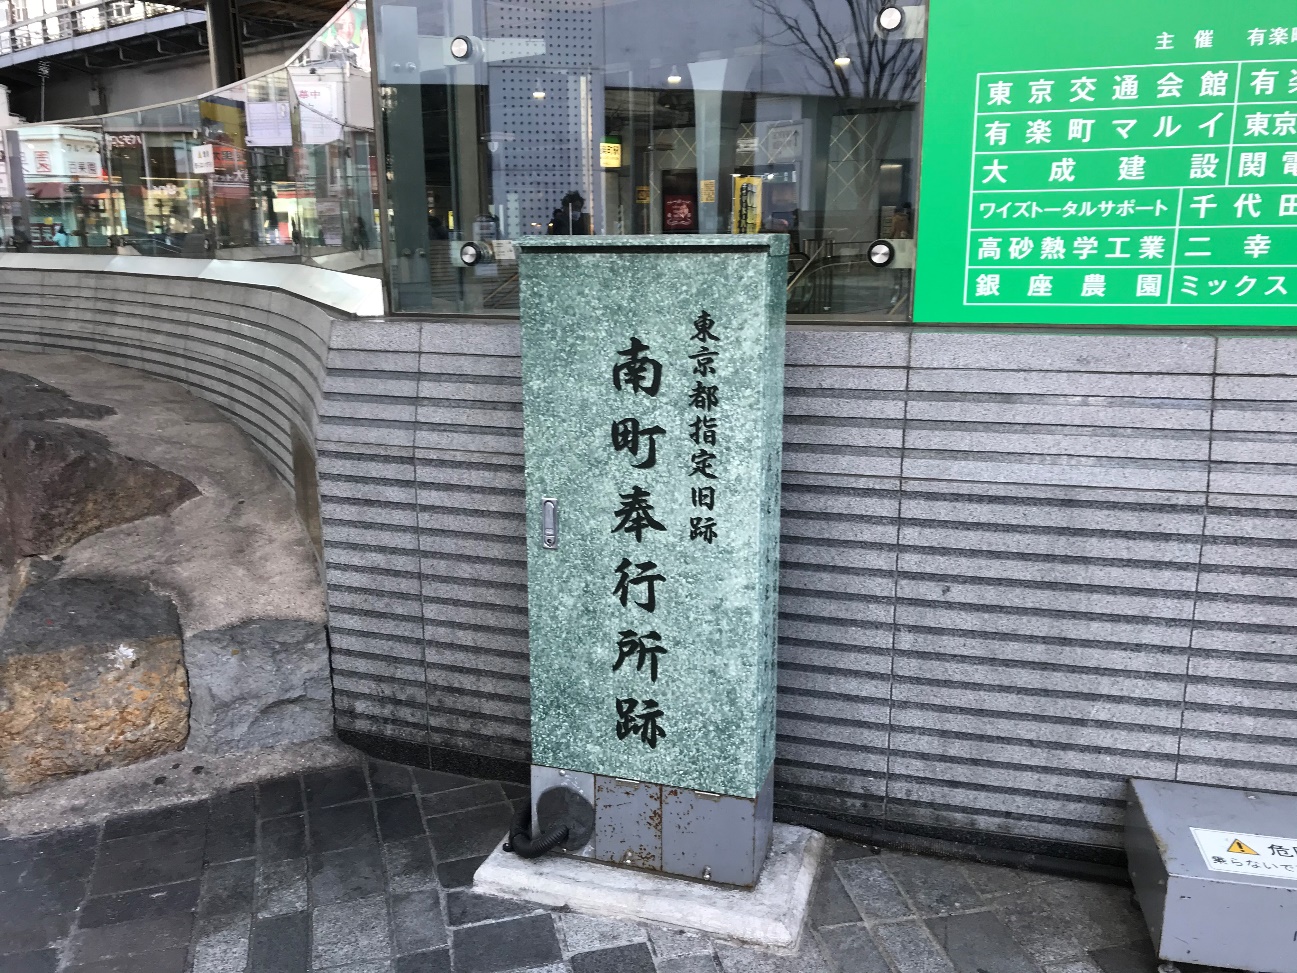 東京街歩き：江戸南町奉行所跡から、かつての江戸の街を現代に重ねてみる